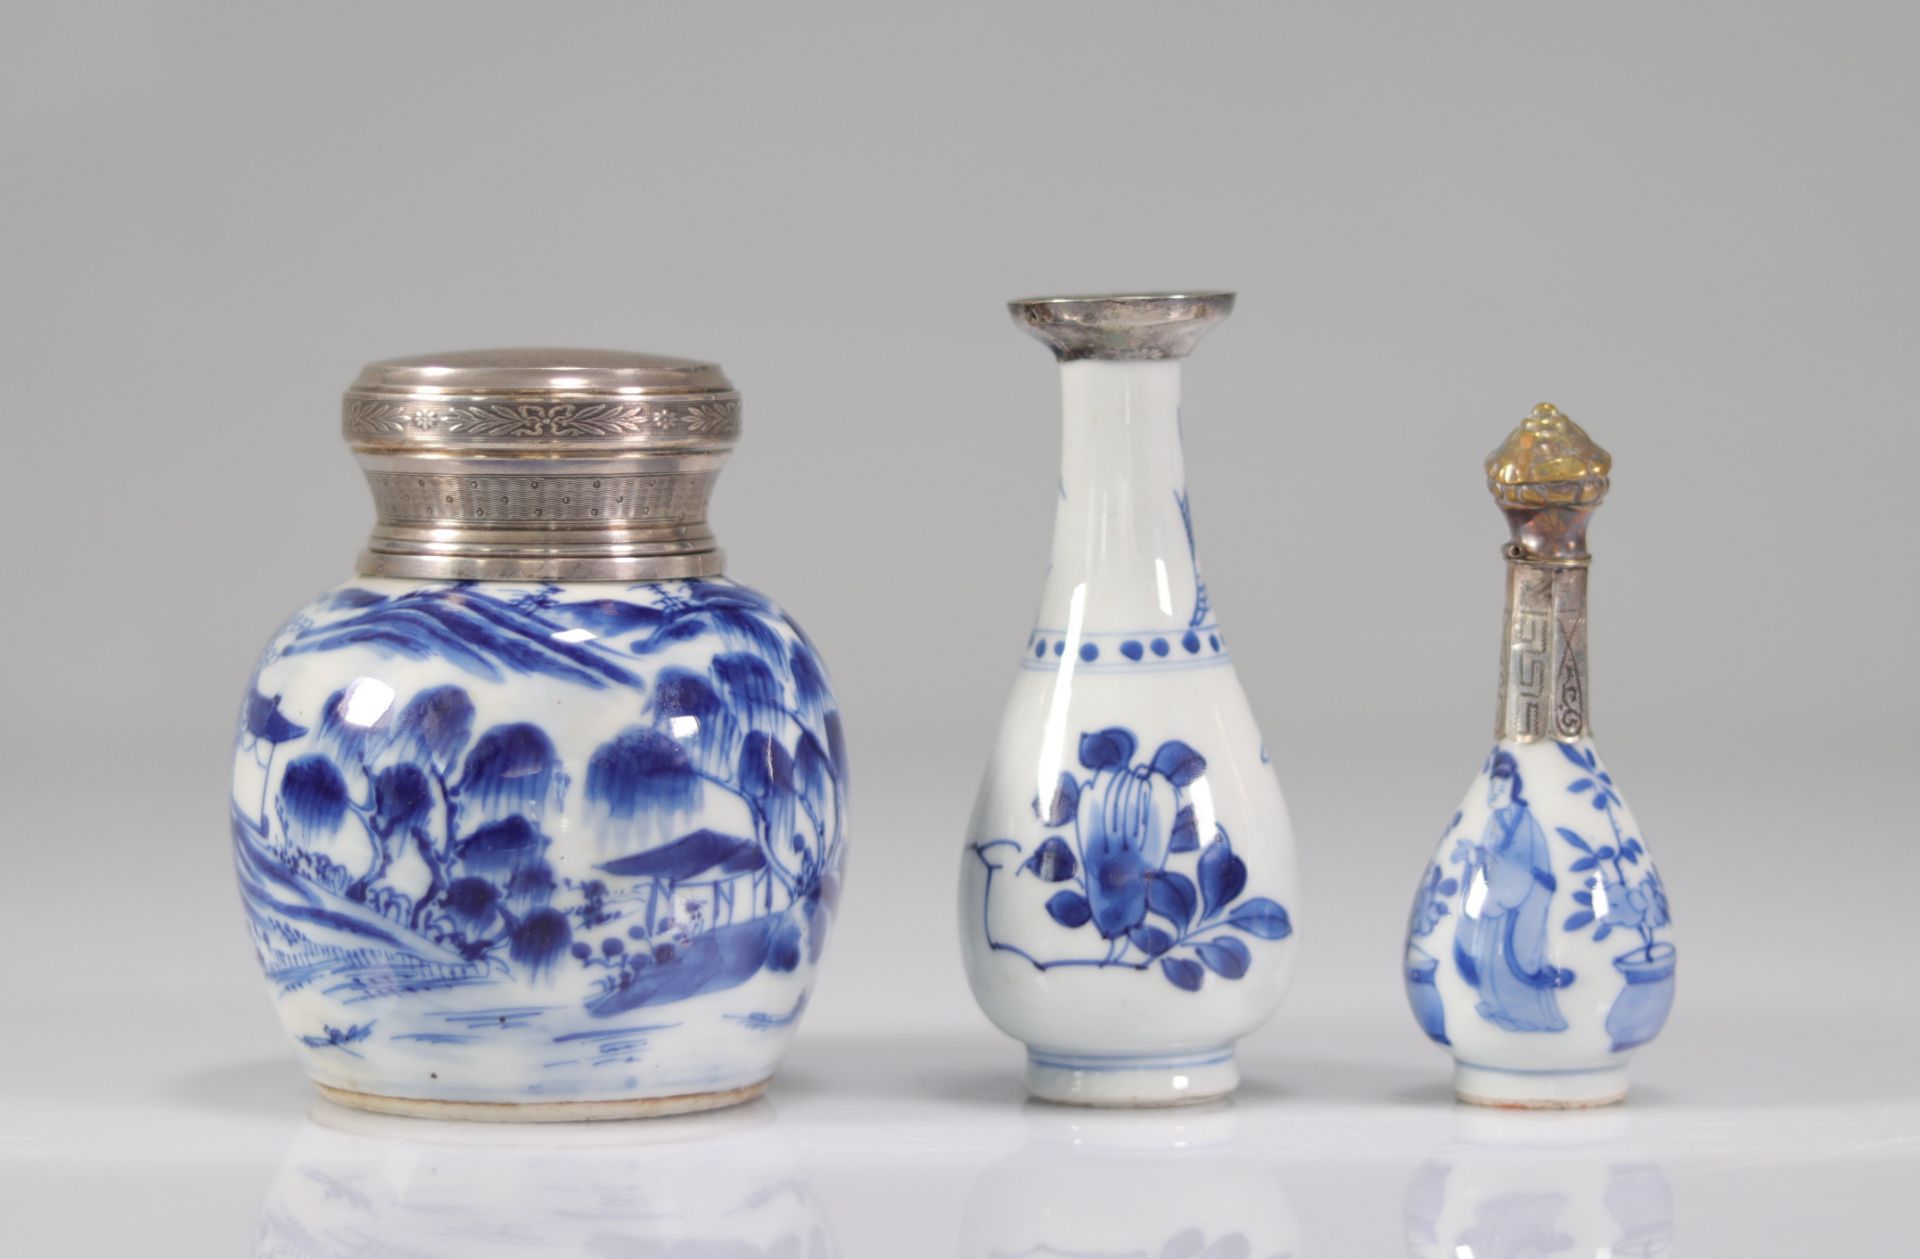 China set of 3 porcelain white blue - Image 2 of 2